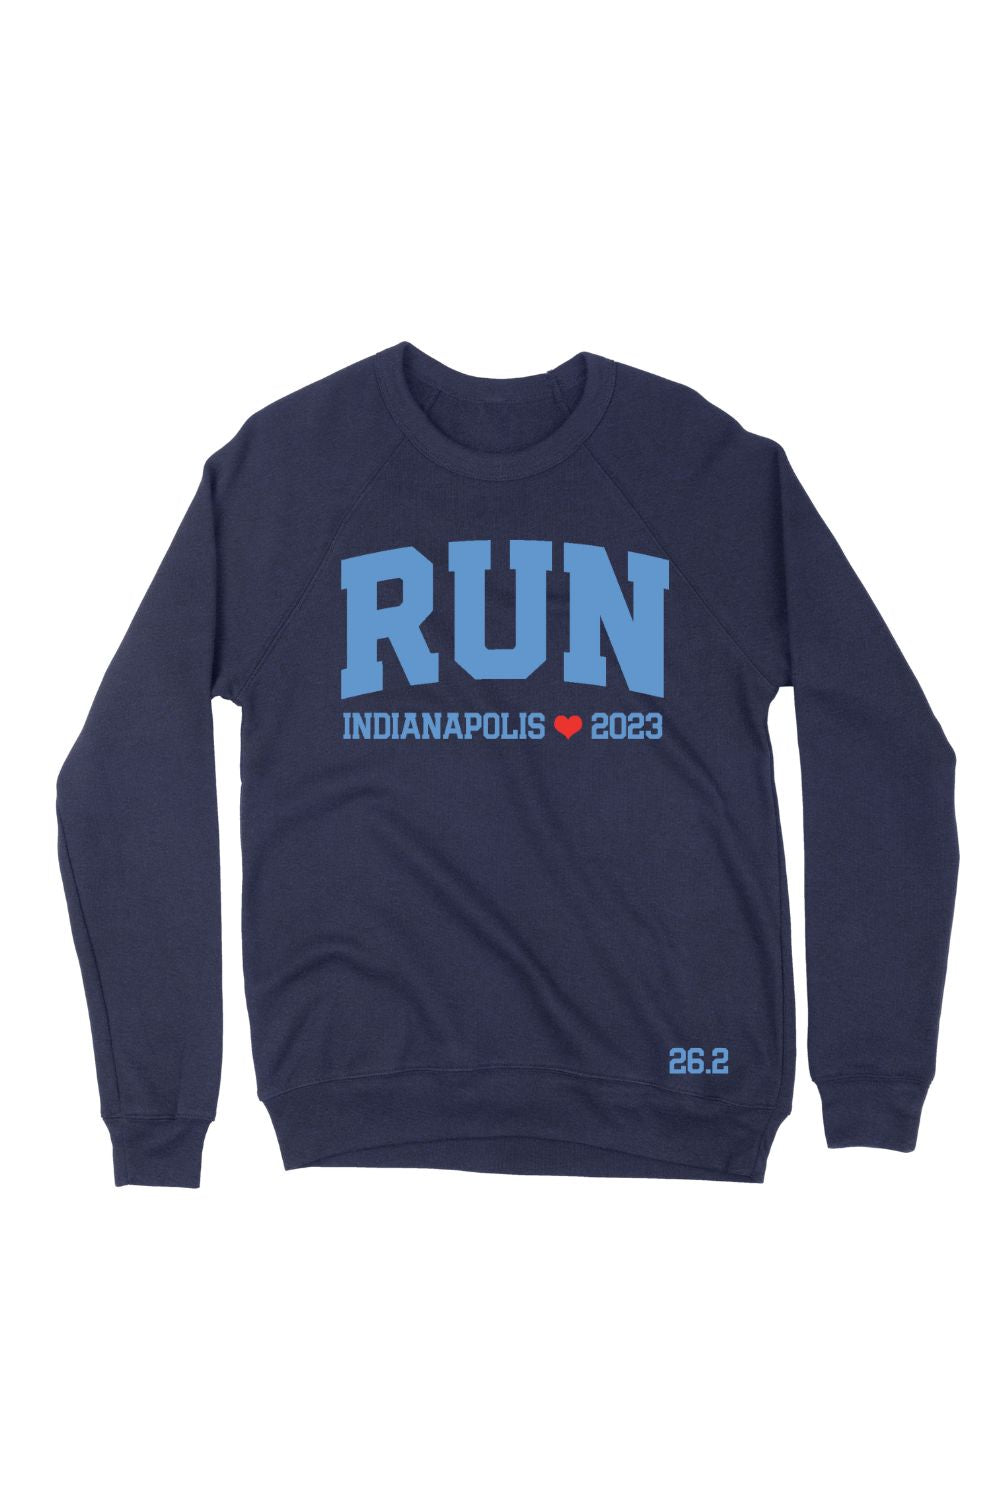 RUN Indianapolis 2023 Sweatshirt